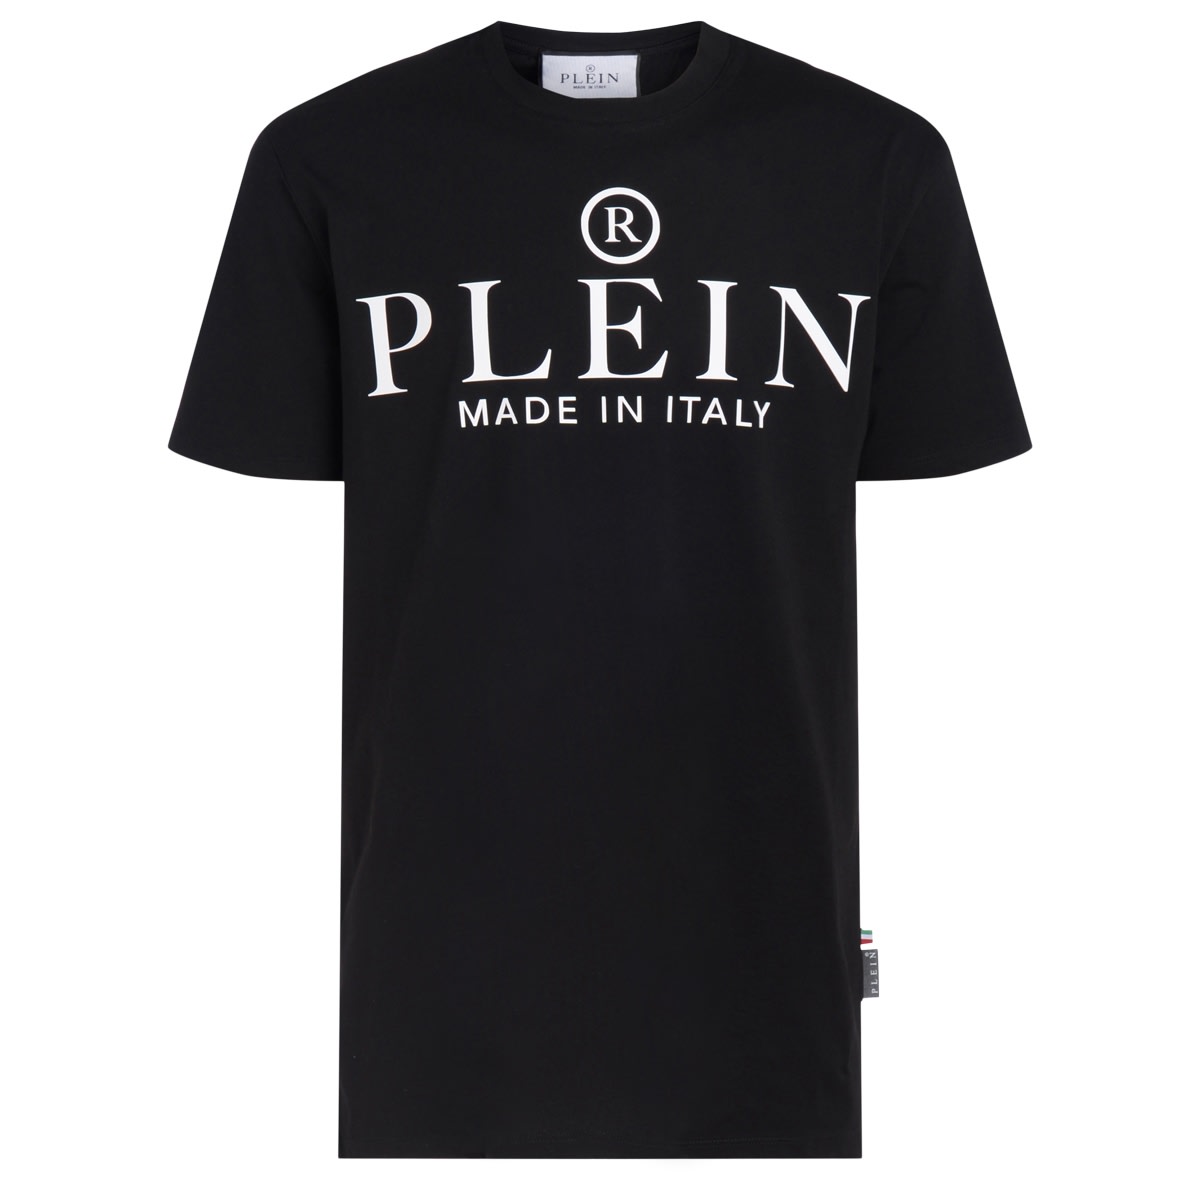 Philipp Plein Black T-shirt With White Logo